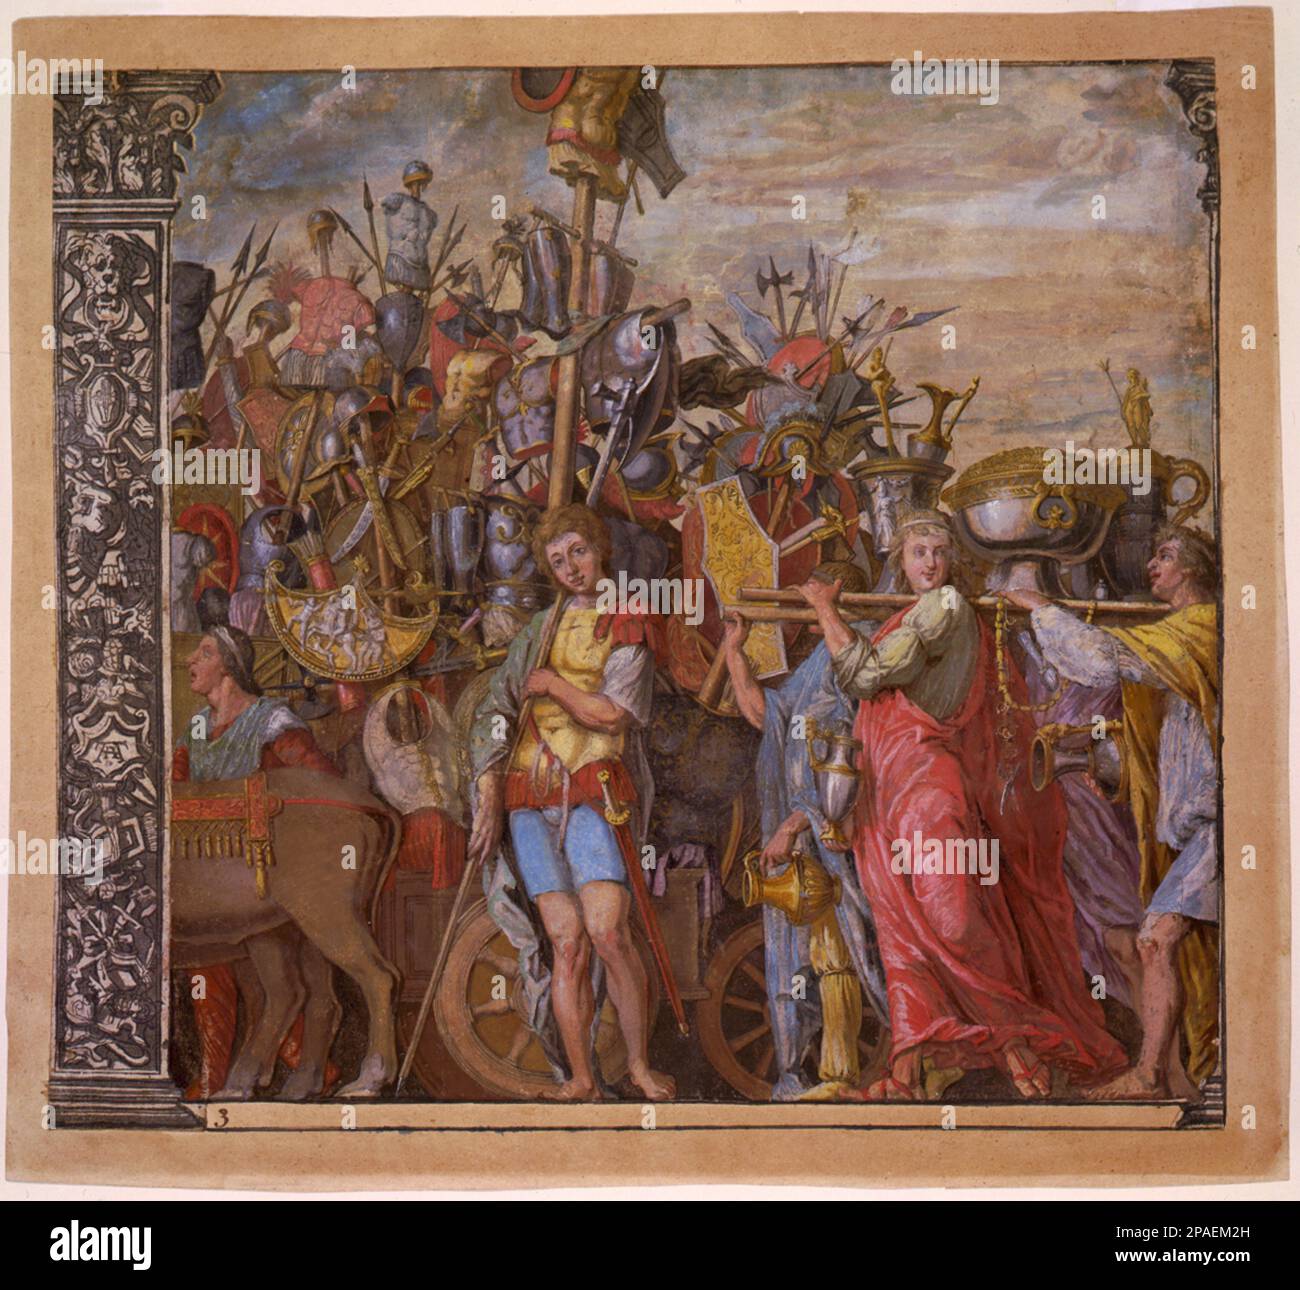 1598 ca : il Trionfo (us) Caesaris ( il trionfo di Giulio CESARE ), piatto 3 ( legno chiaroscuro con gouache ), del pittore italiano Andrea Andreani ( 1584 - 1610 ), dagli affreschi originali di ANDREA MANTEGNA . - RITRATTO - RITRATTO - ANTICA ROMA - ROMA ANTICA - RINASCIMENTO - RINASCIMENTO - RINASCIMENTO - ARTE - ARTI VISIVE - ARTI VISIVE - PITTORE - INCISIONE - ACQUARELLO ---- ARCHIVIO GBB Foto Stock